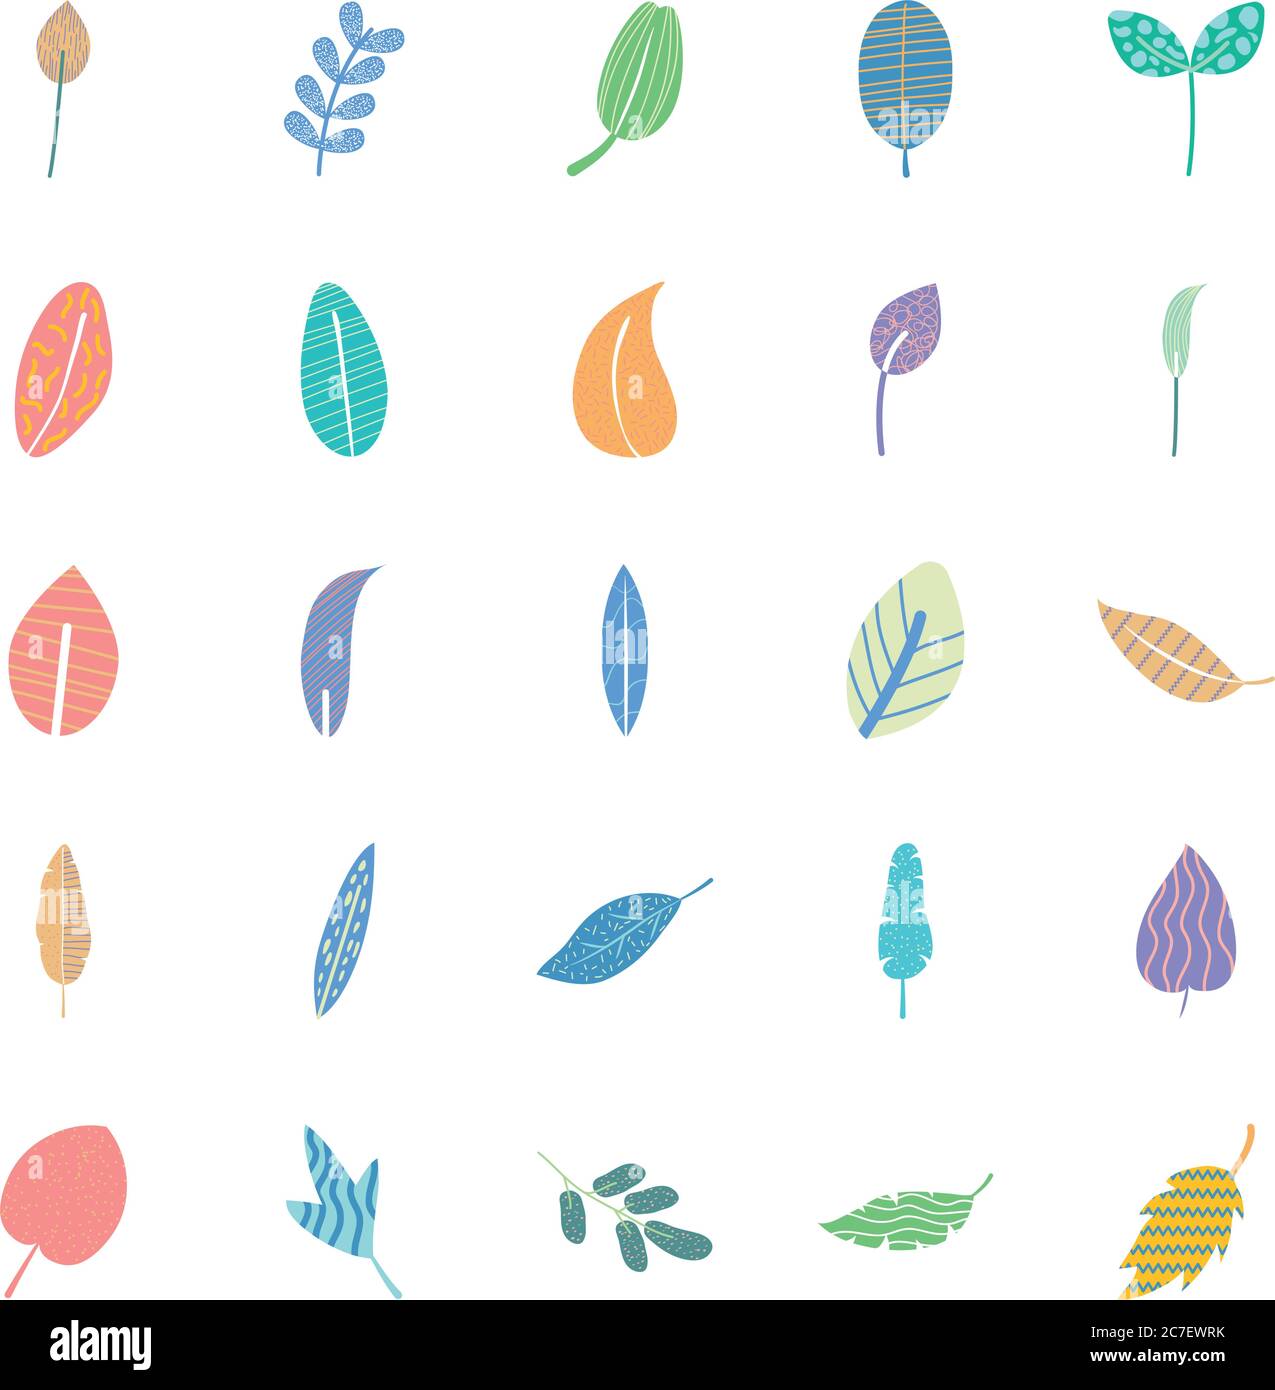 conjunto de iconos de hojas tropicales abstractas y coloridas sobre fondo blanco, estilo plano, ilustración vectorial Ilustración del Vector